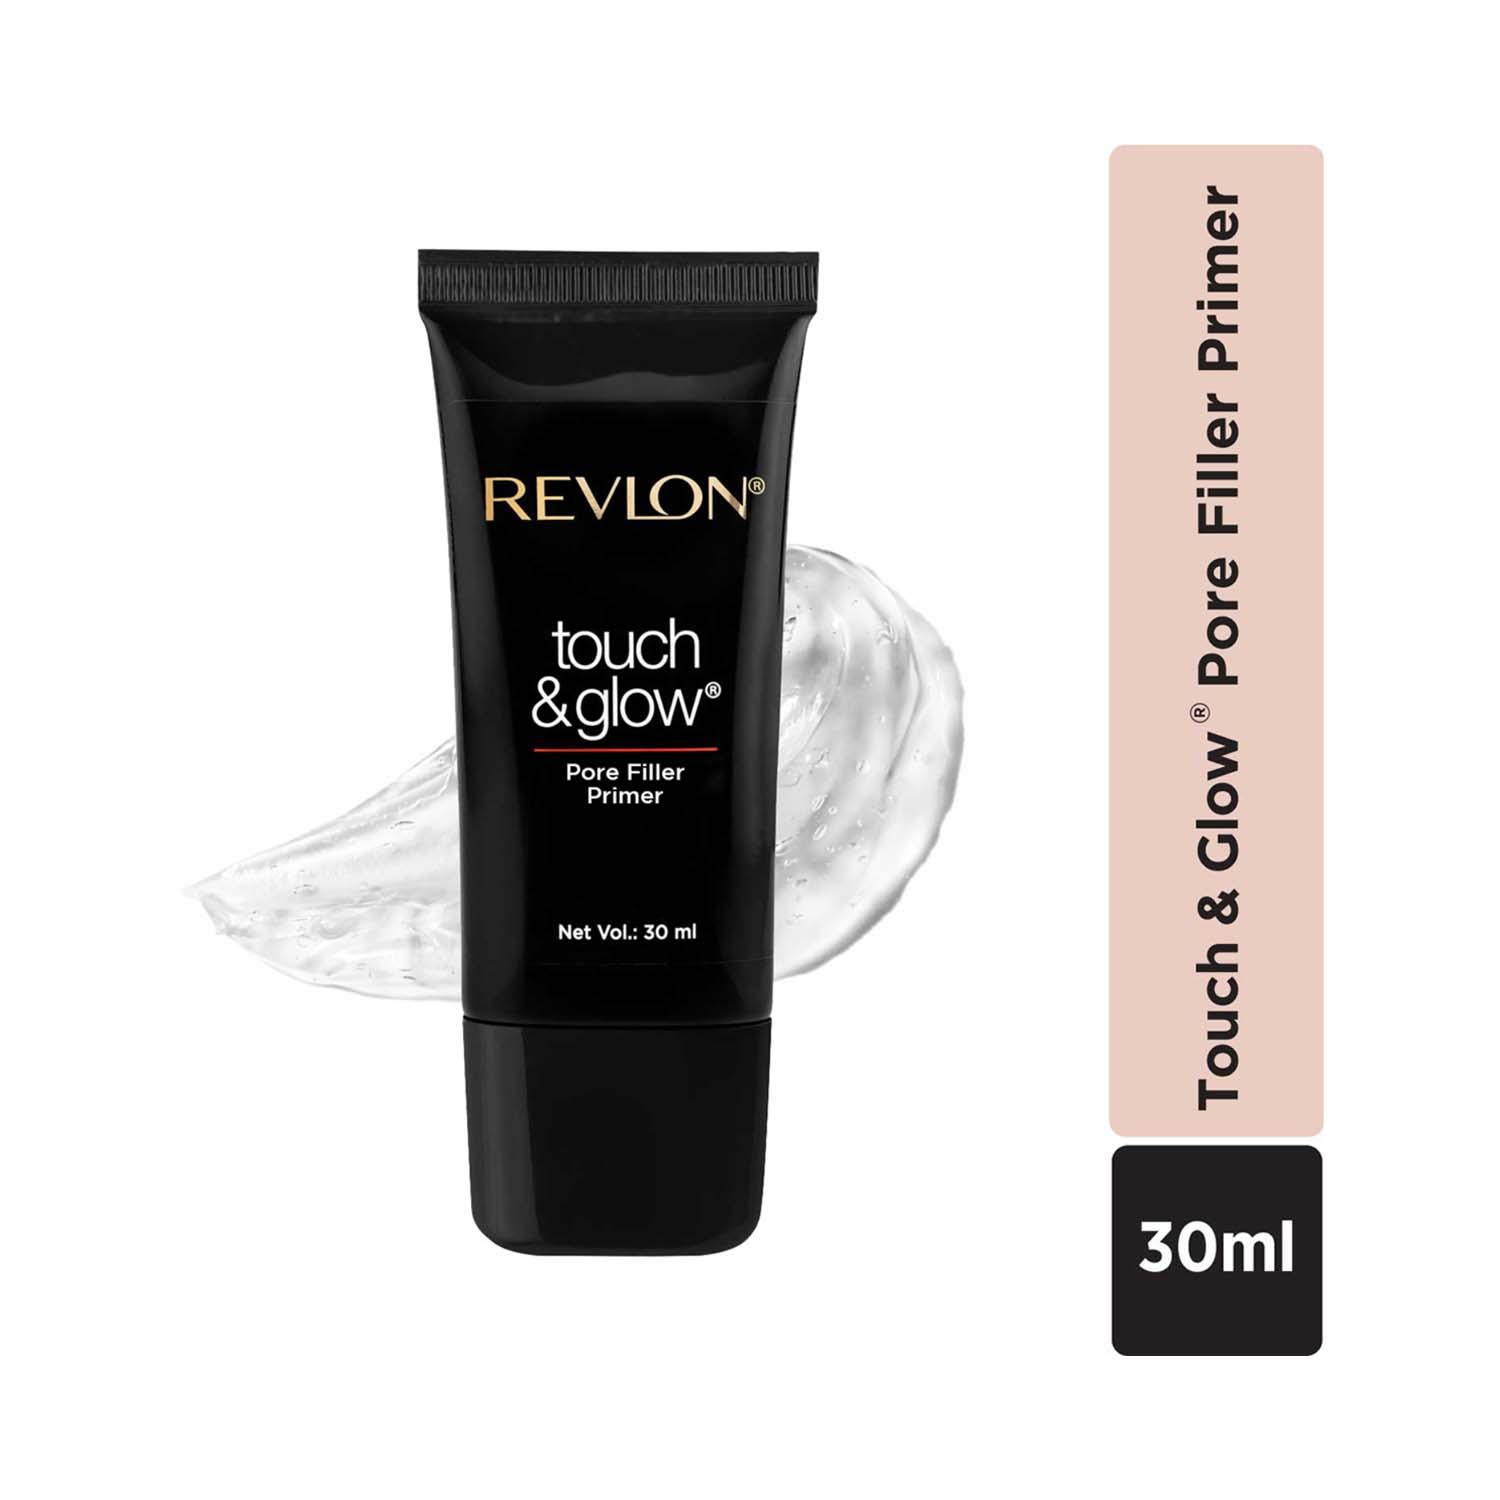 Revlon | Revlon Touch & Glow Pore Filler Primer (30 ml)